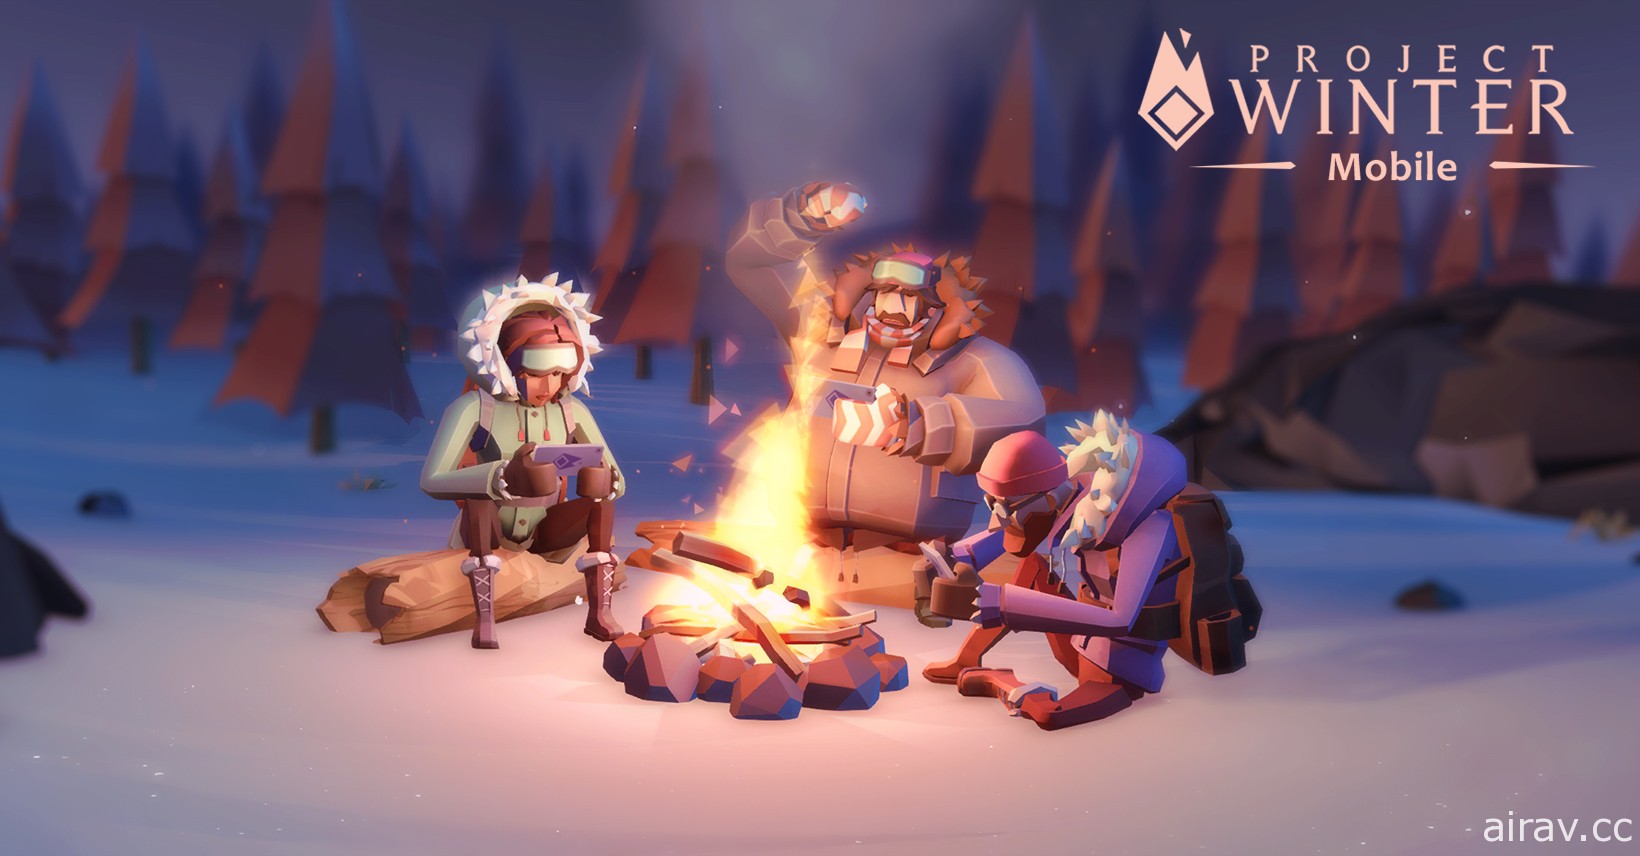 狼人殺遊戲《寒冬計畫 Mobile》於加拿大、美國 Google Play 展開 Beta 測試